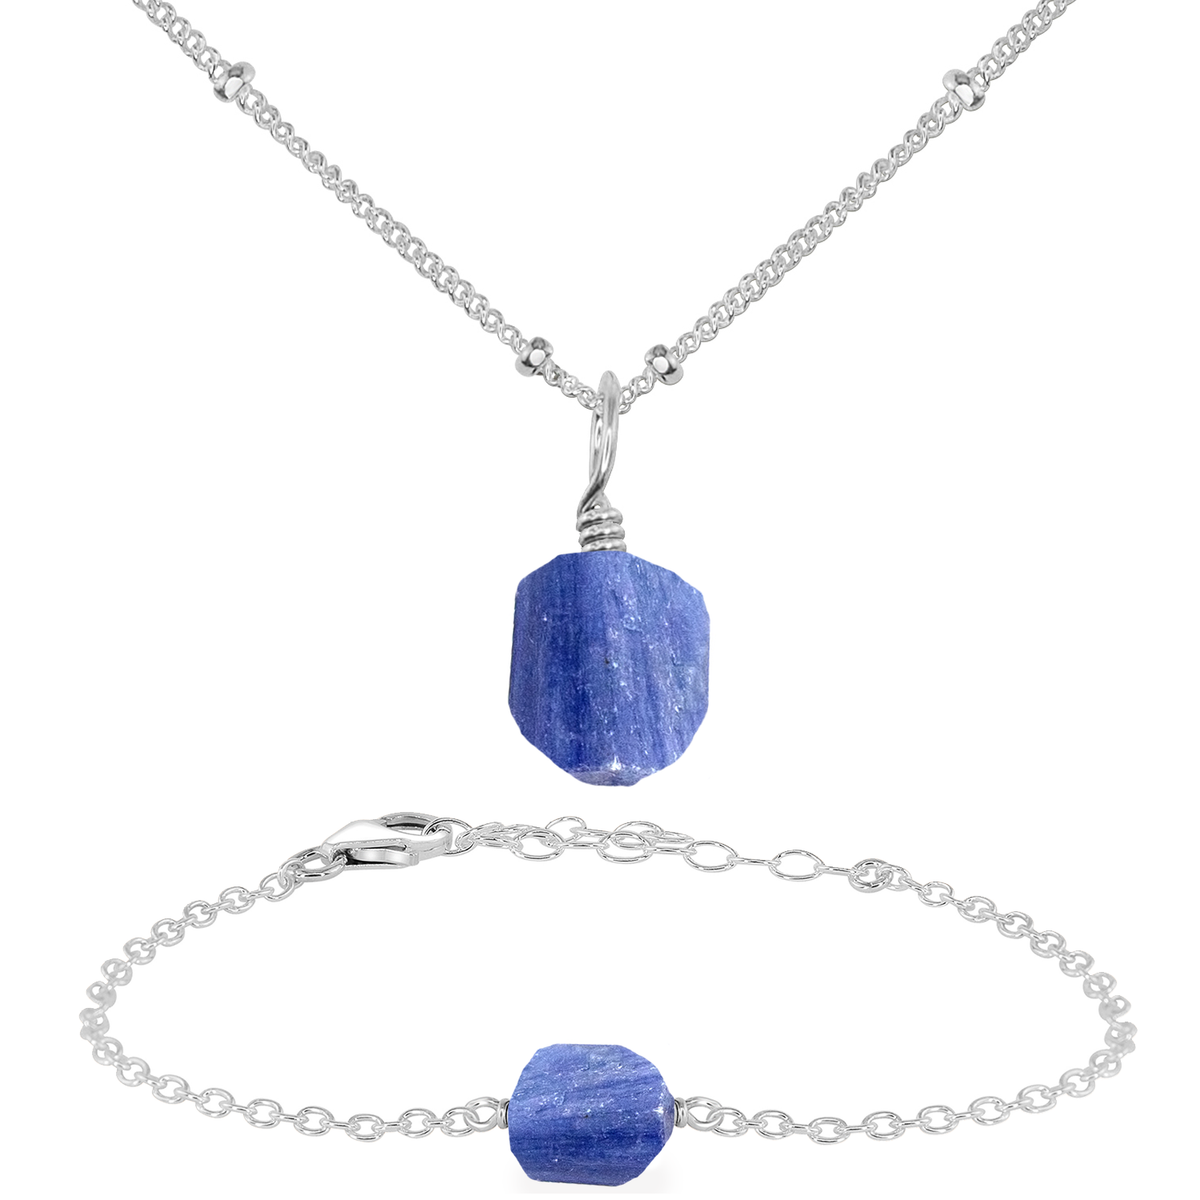 Raw Kyanite Crystal Jewellery Set - Raw Kyanite Crystal Jewellery Set - Sterling Silver / Satellite / Necklace & Bracelet - Luna Tide Handmade Crystal Jewellery